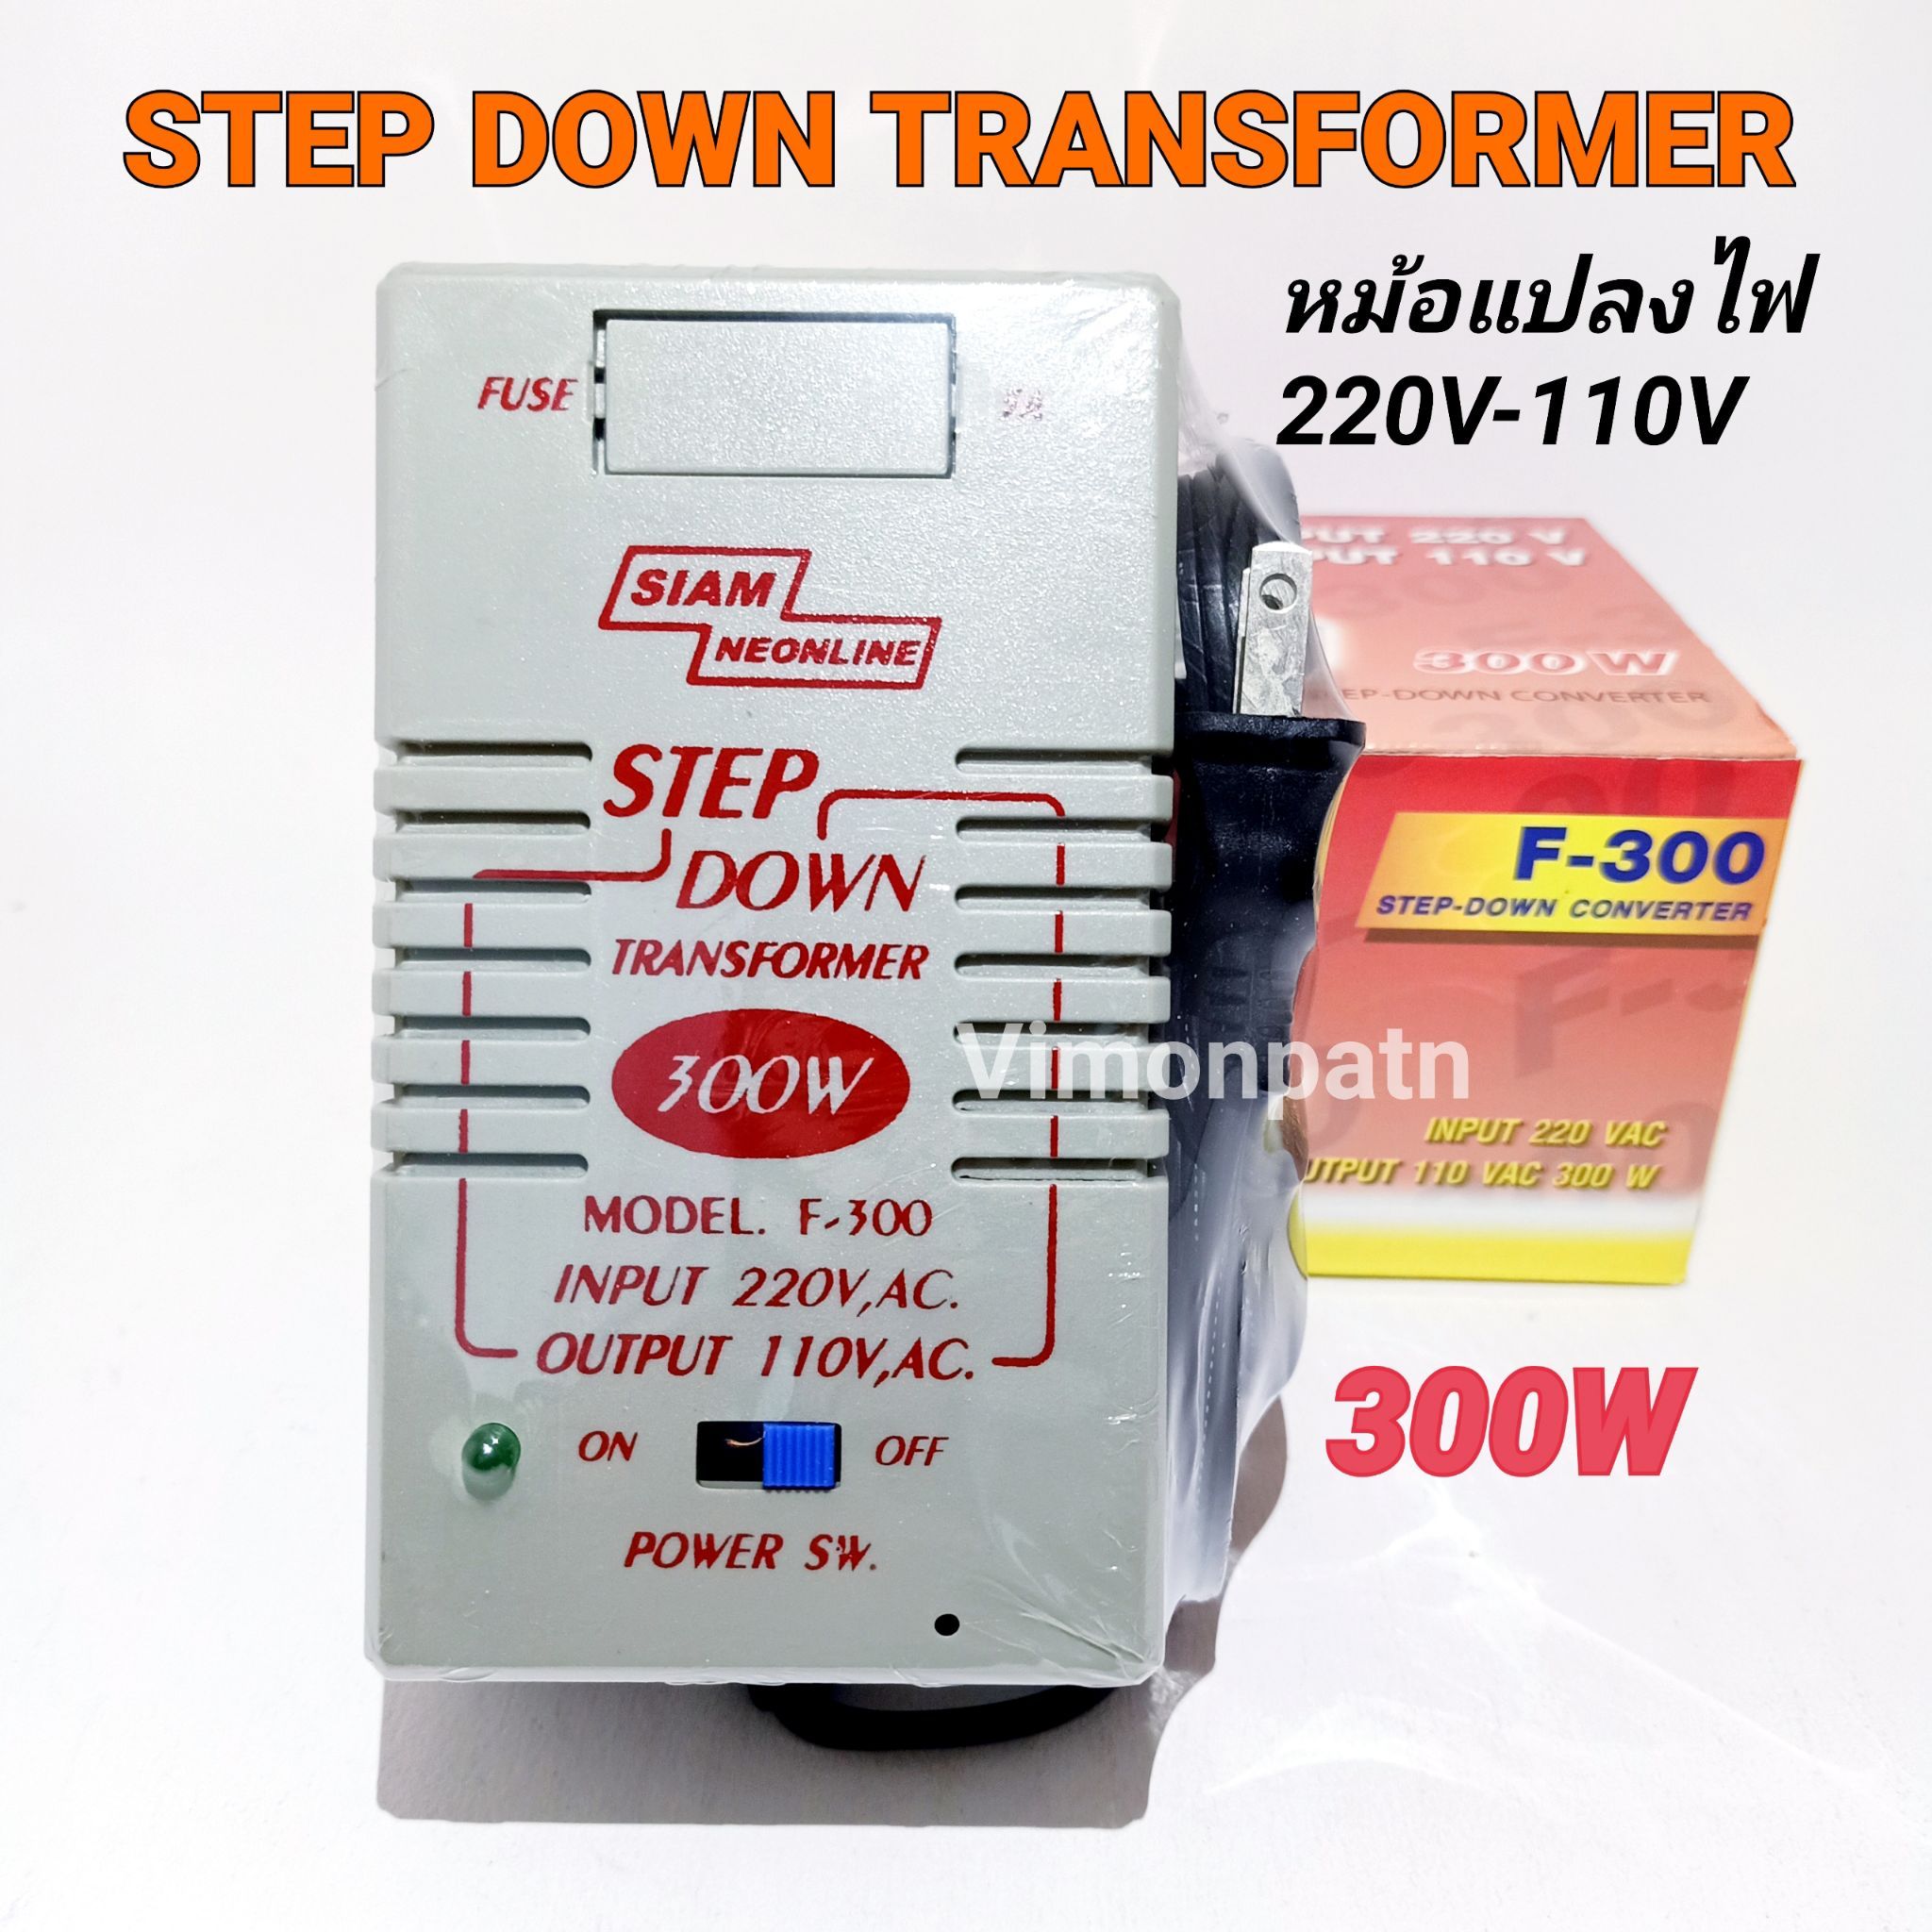 หม้อแปลงไฟ 110V Step Down Transformer 300W หม้อแปลงไฟ 220V เป็น 110V สยามนีออน รุ่น F-300